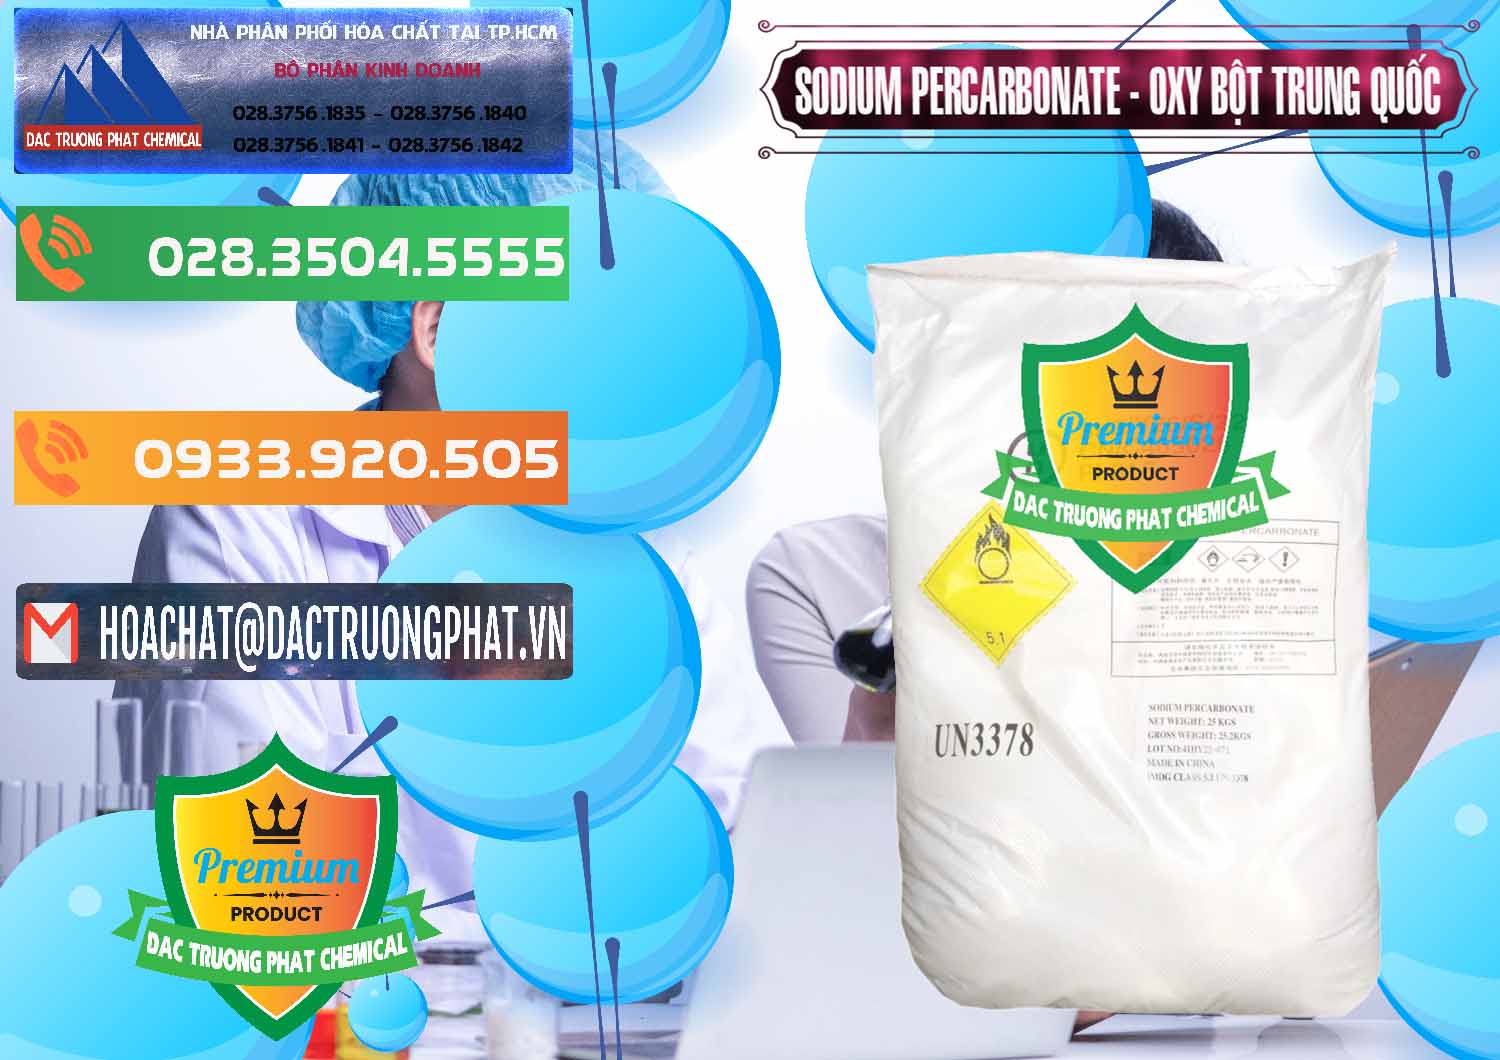 Công ty kinh doanh & bán Sodium Percarbonate Dạng Bột Trung Quốc China - 0390 - Chuyên phân phối và cung cấp hóa chất tại TP.HCM - hoachatxulynuoc.com.vn